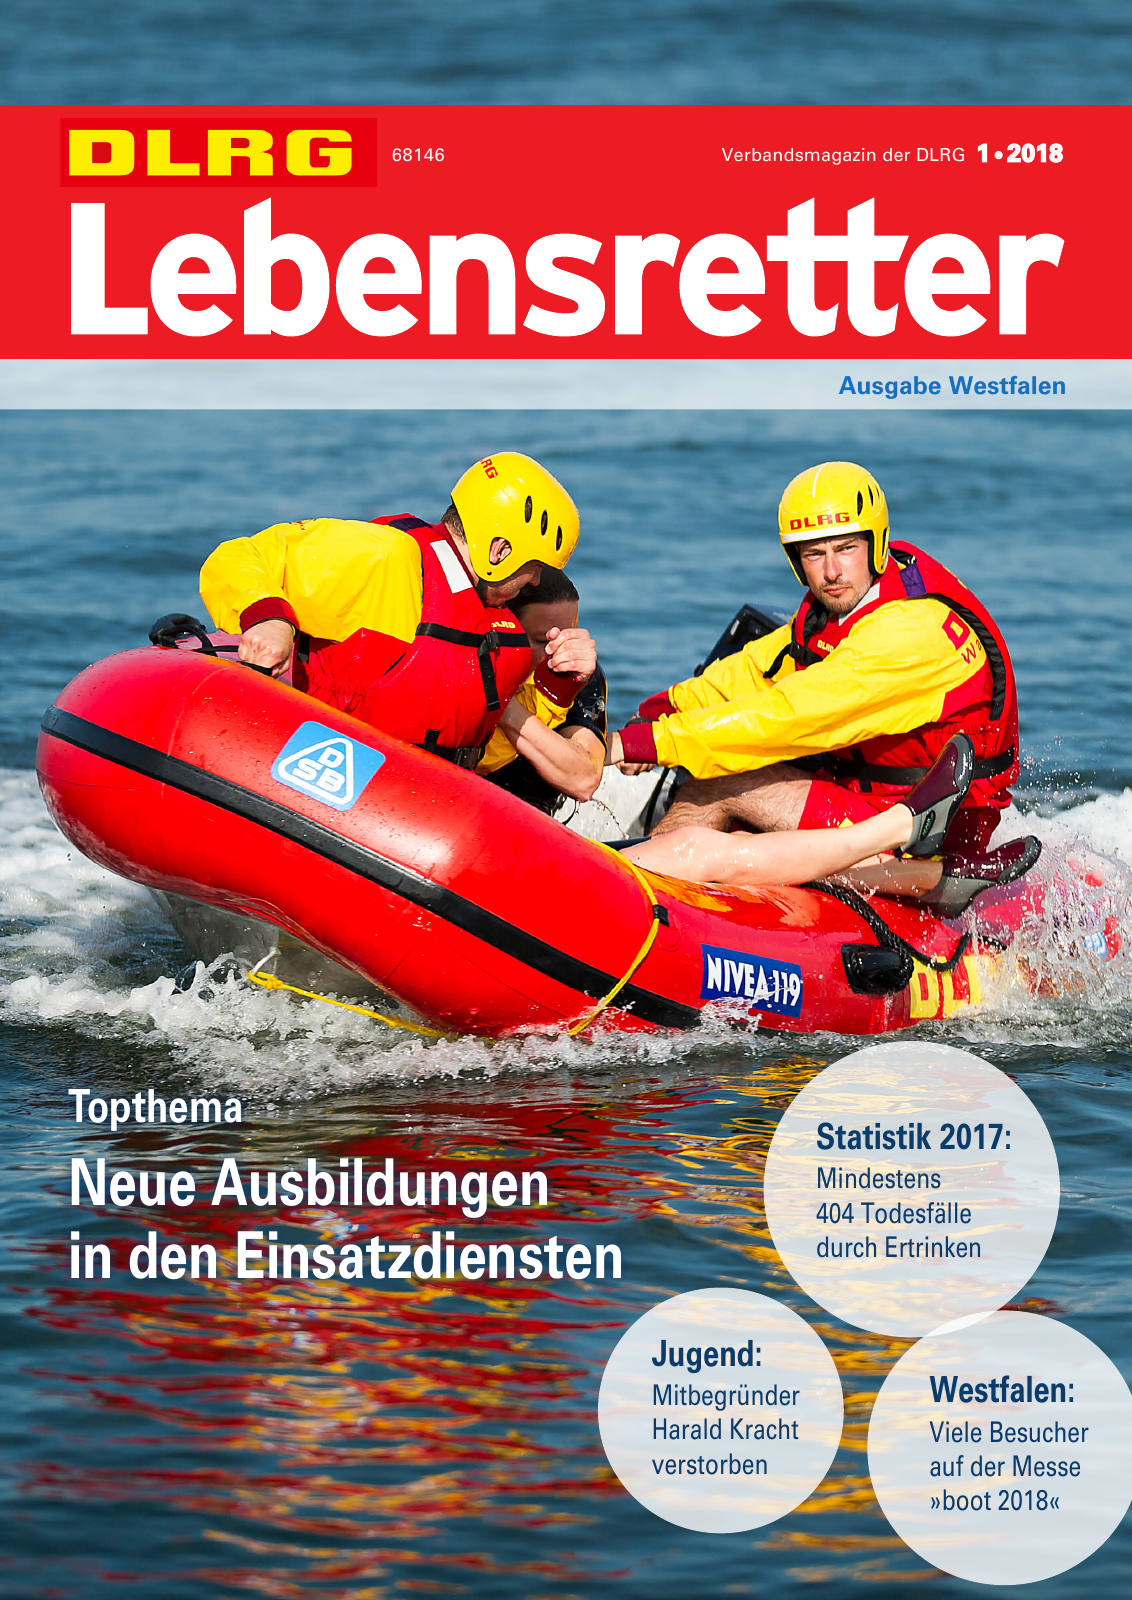 Vorschau Lebensretter 1/2018 - Regionalausgabe Westfalen Seite 1